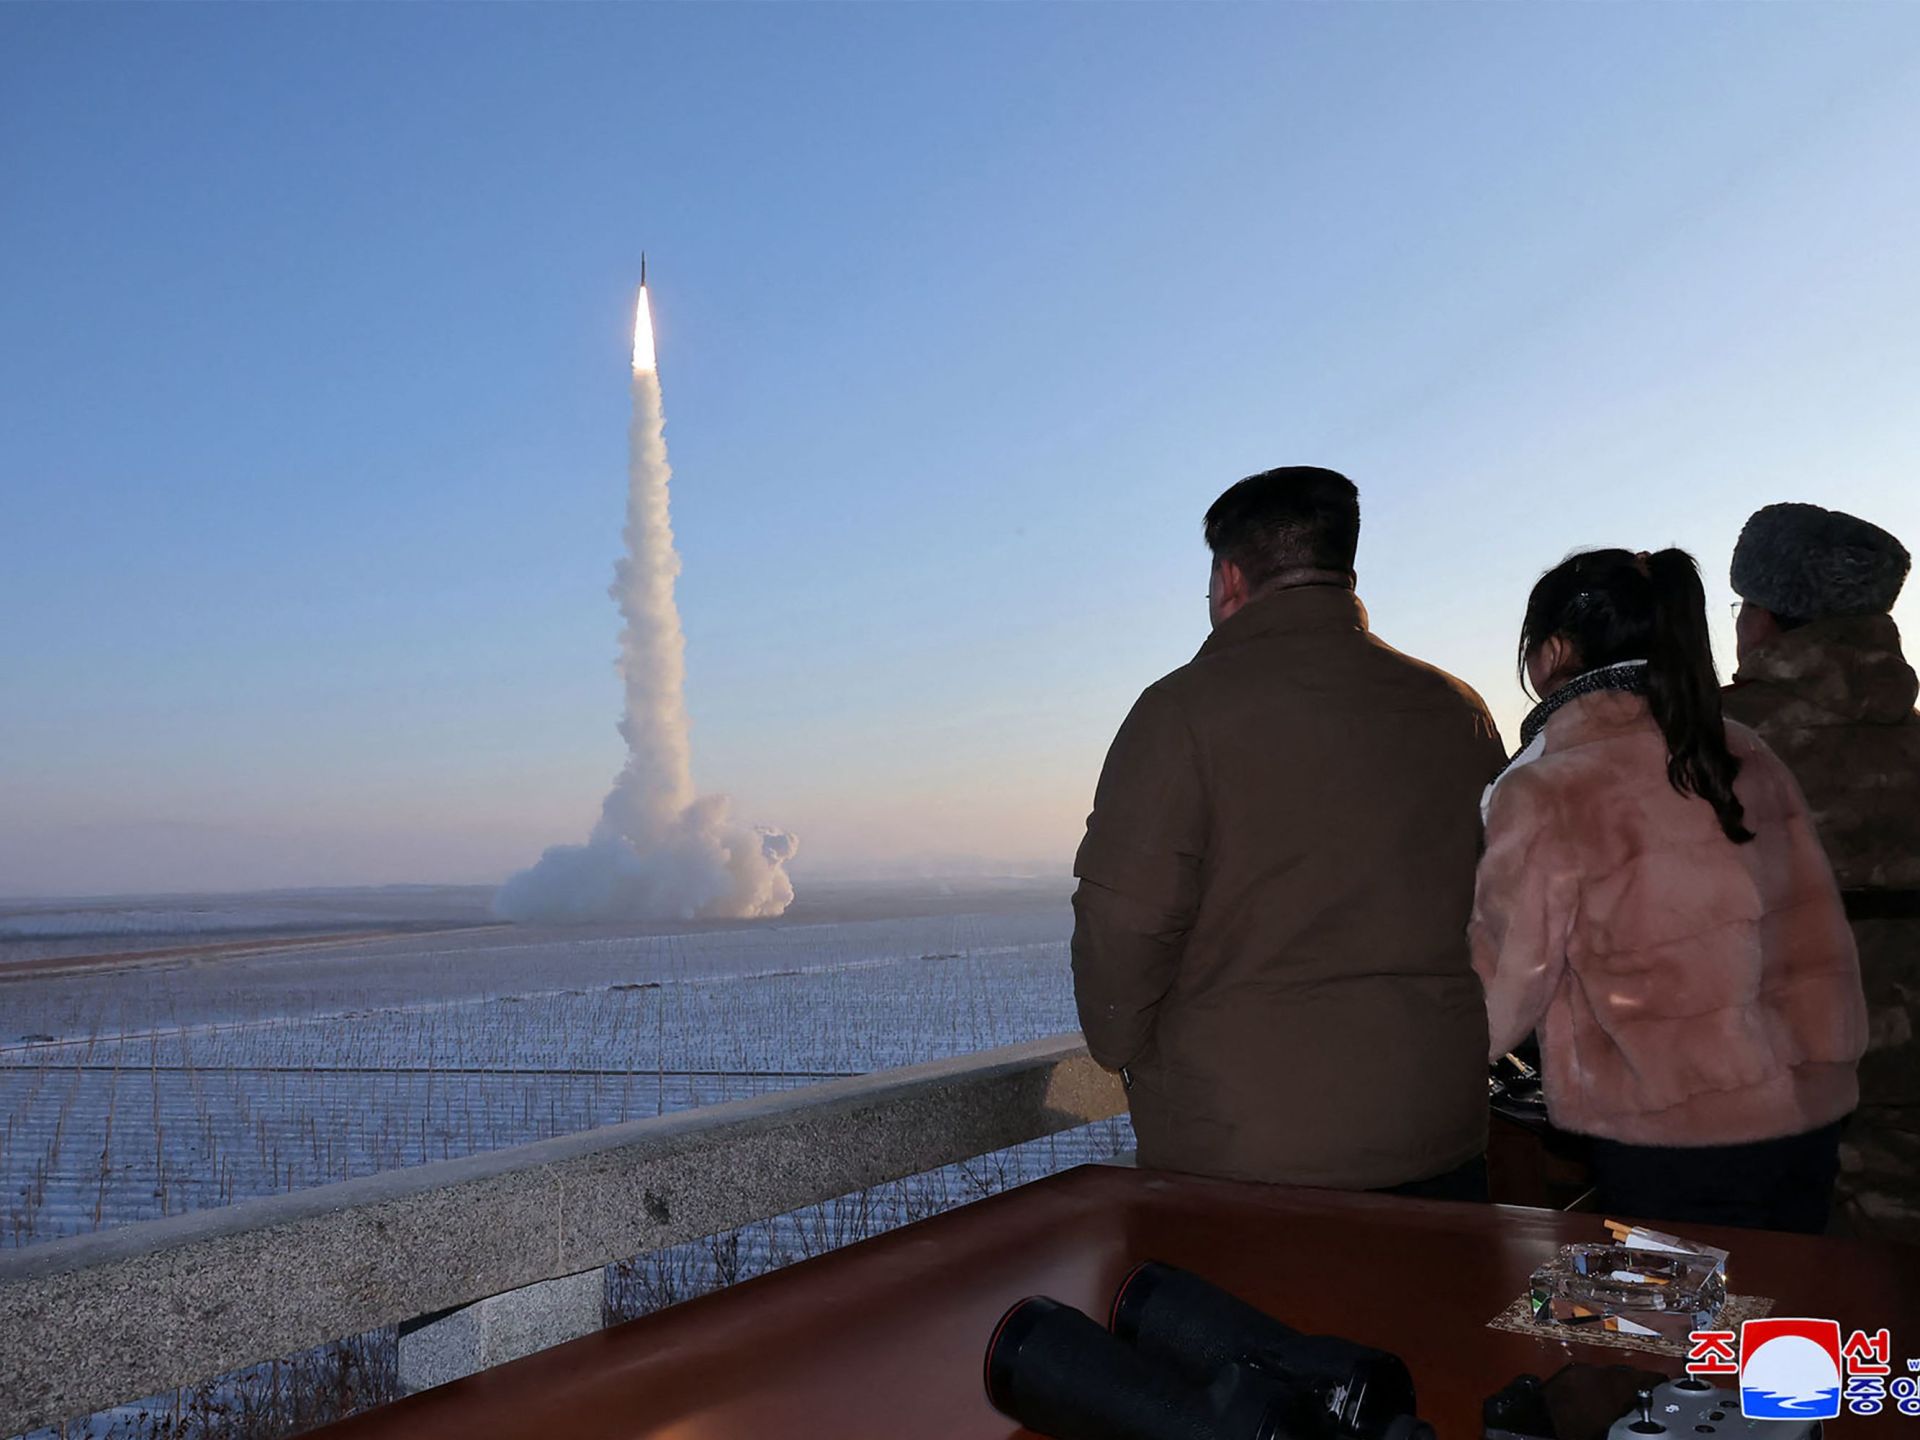 كوريا الشمالية تختبر “نظام أسلحة نووية تحت الماء” | أخبار – البوكس نيوز